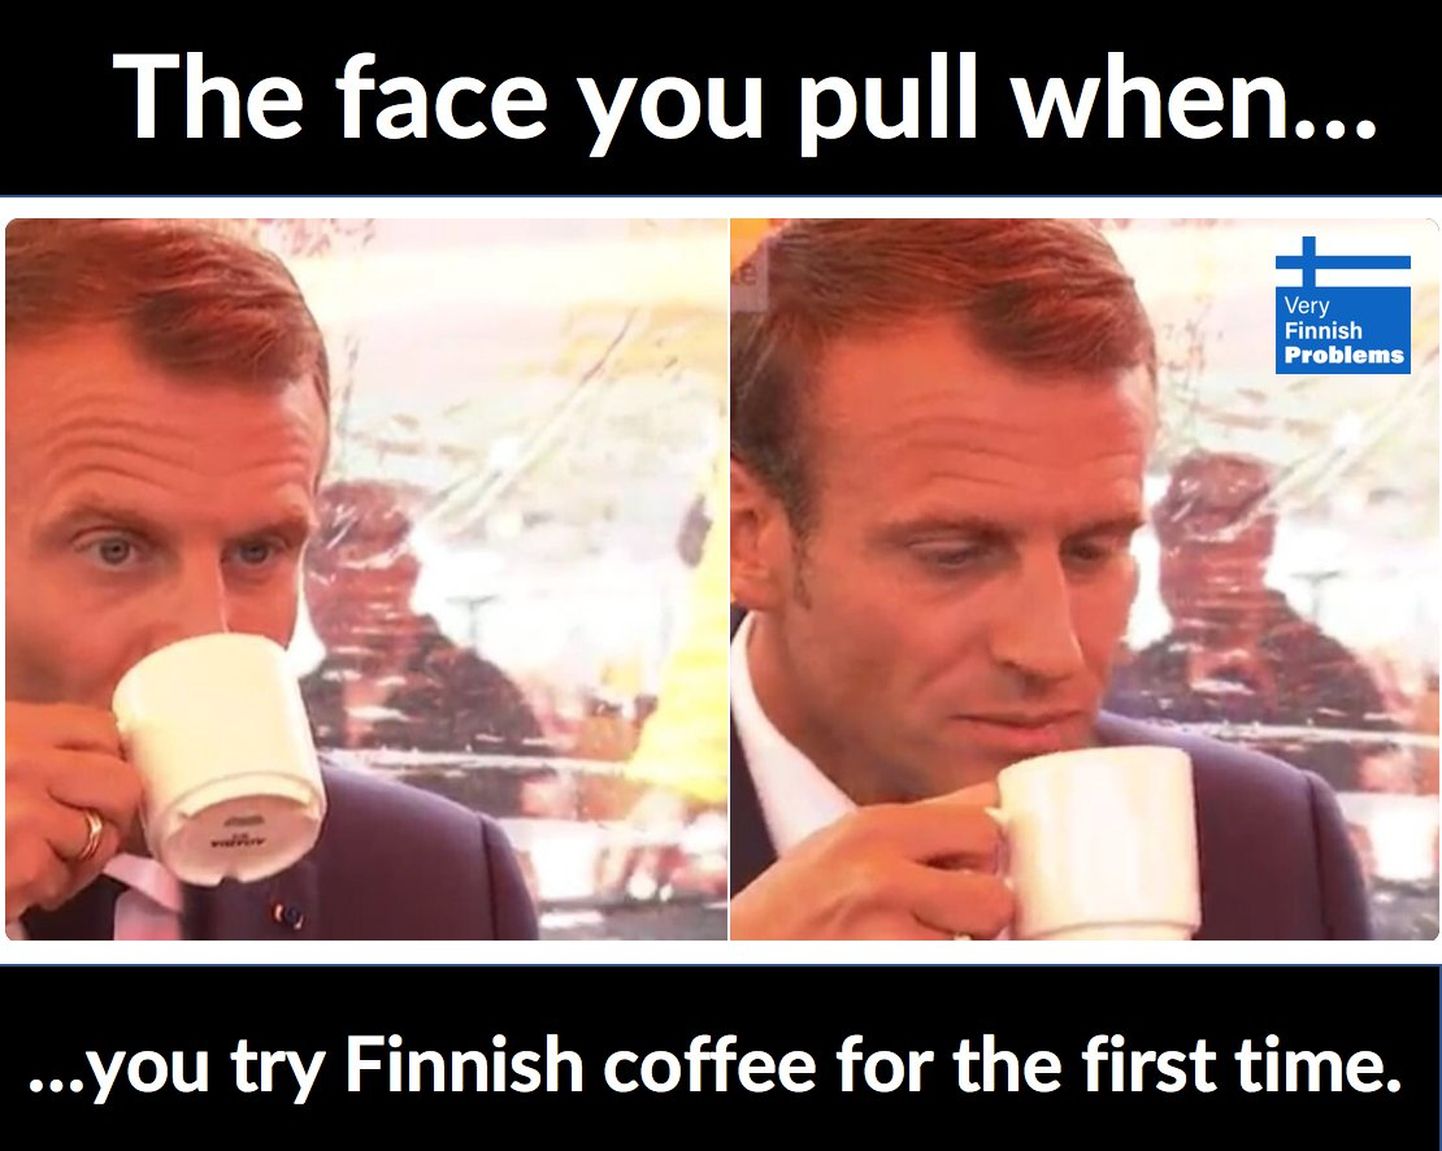 Emmanuel Macron soome kohvi joomas